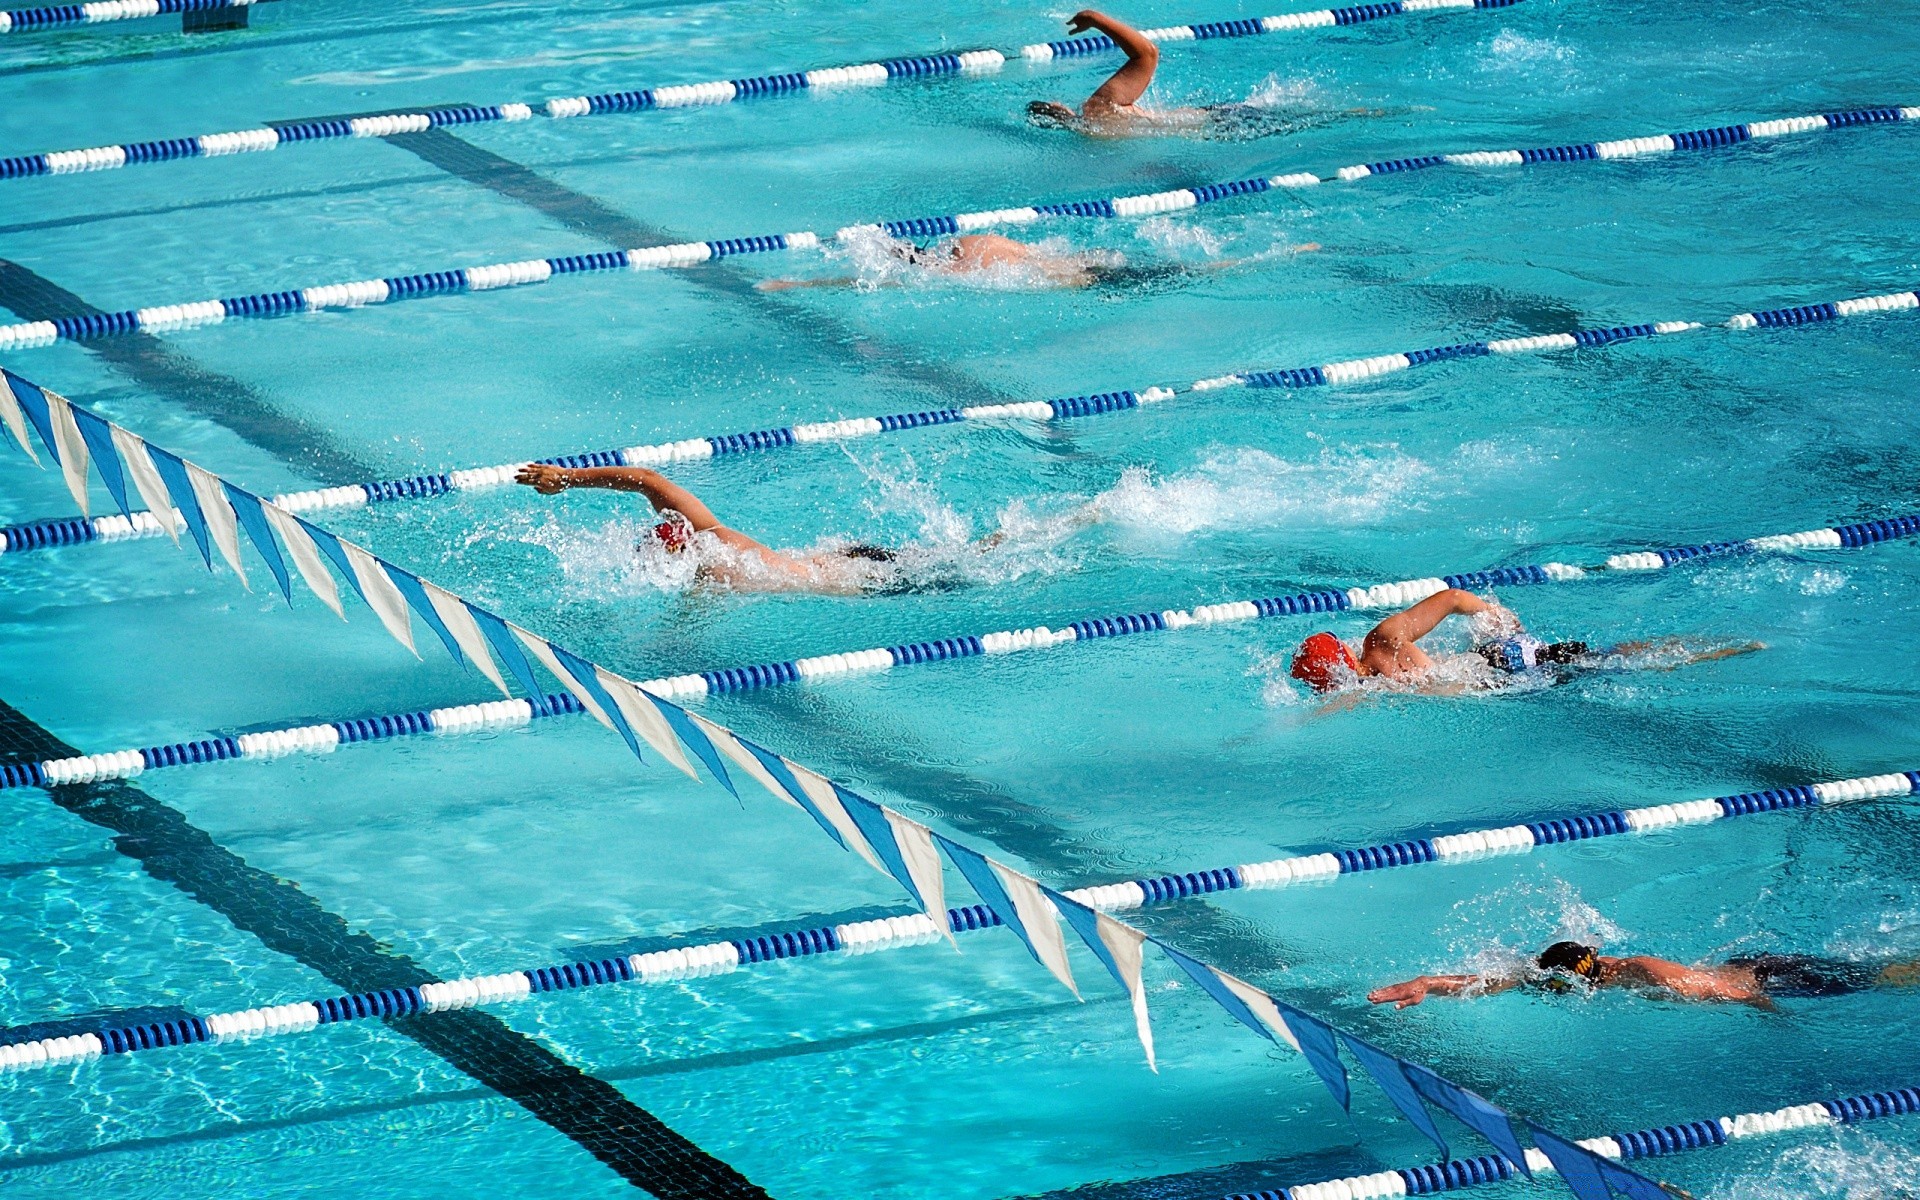 спорт плавание воды бассейн конкурс плавательный бассейн подводный пловец гонки отдых мокрый отдых путешествия очки водные виды спорта всплеск удовольствие курорт лето